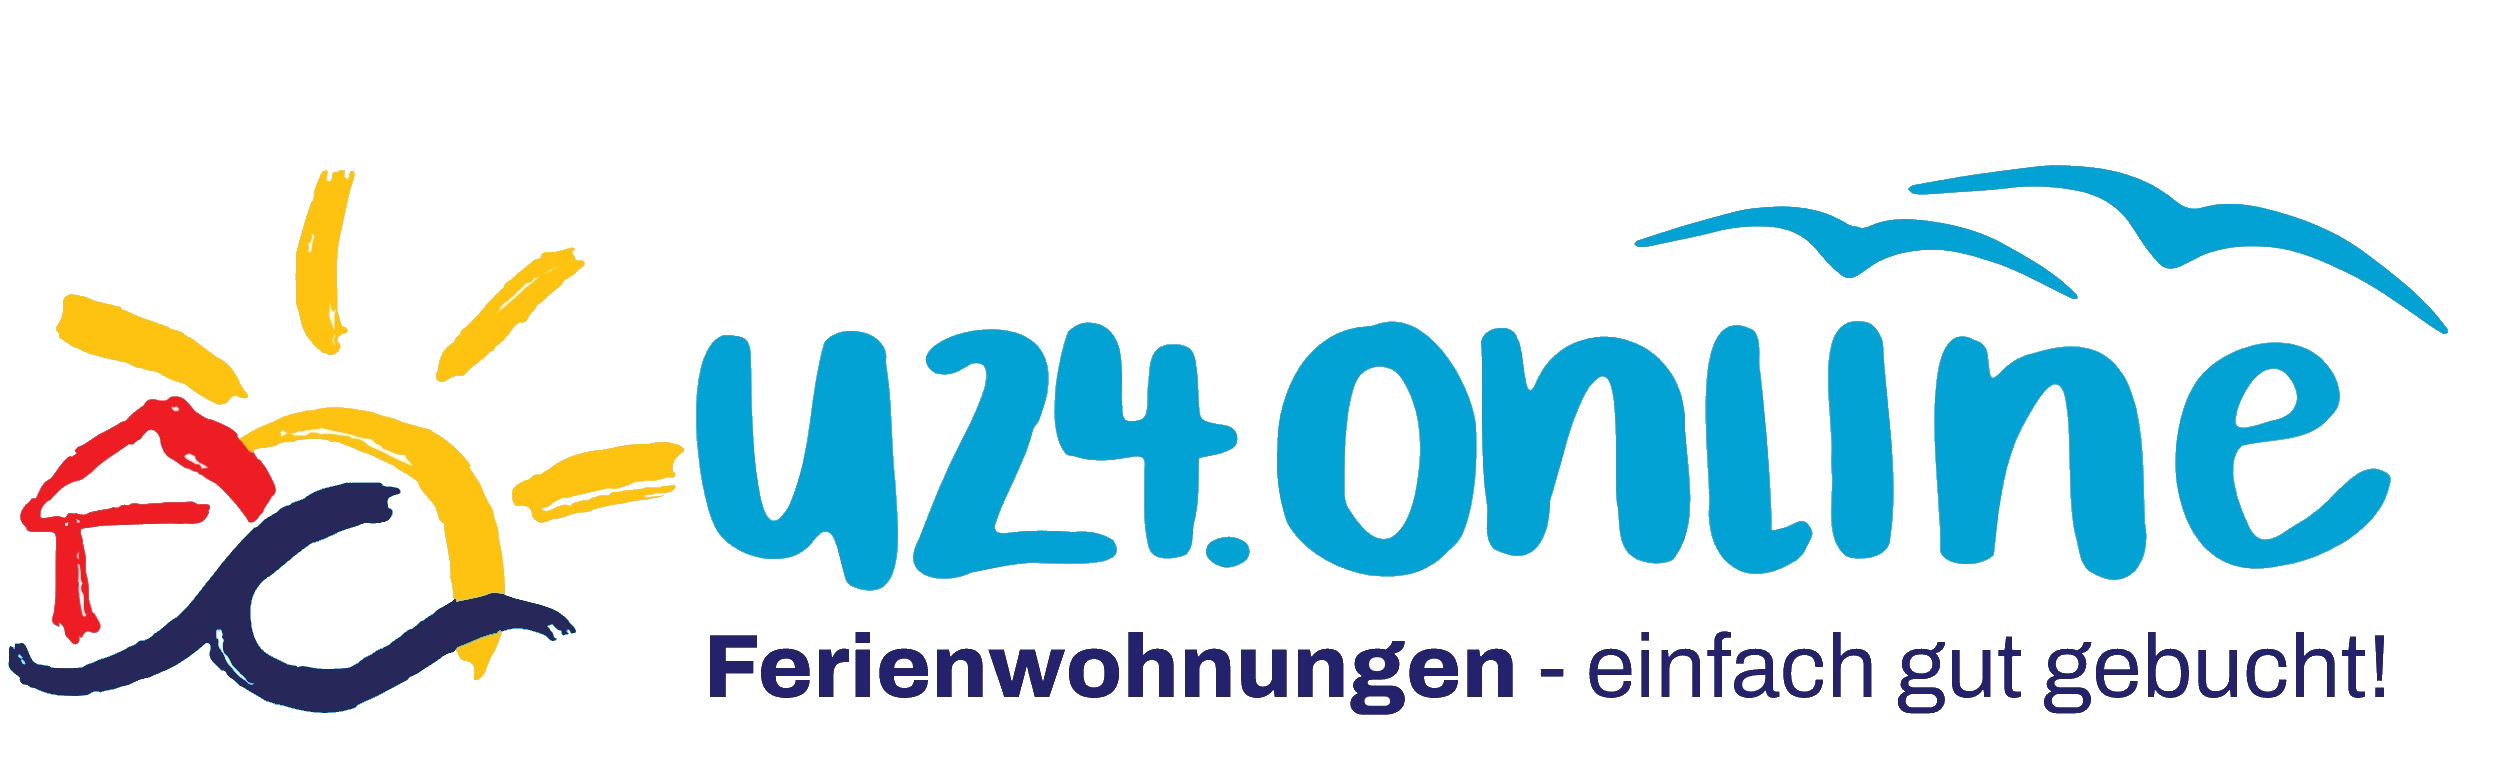 20220704 logo komplett